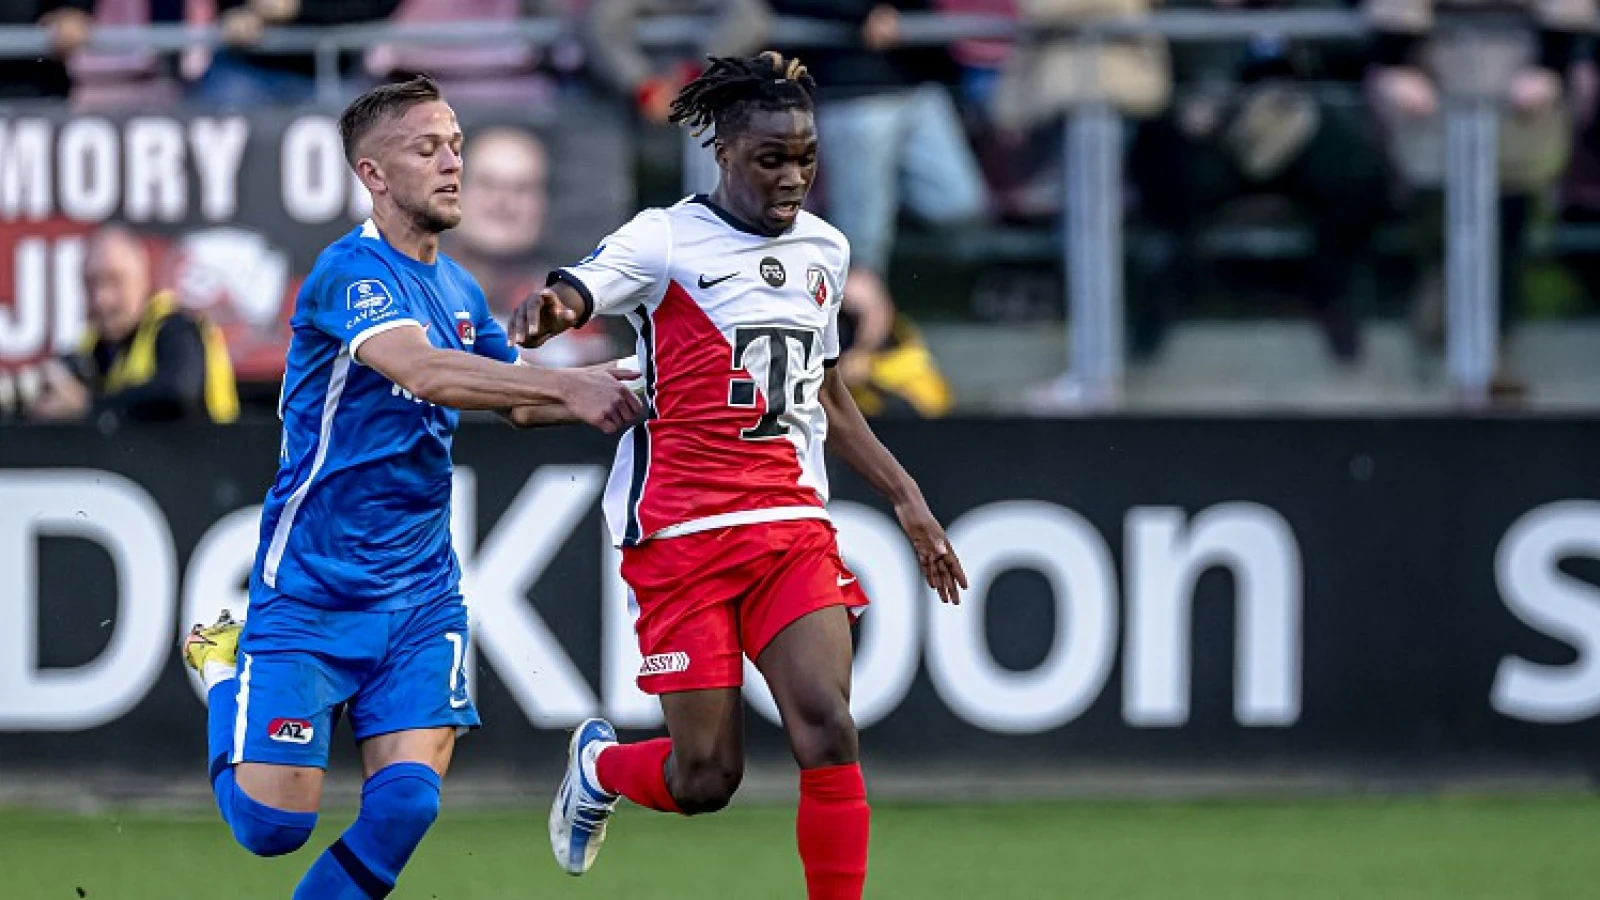 EREDIVISIE | Spektakelstuk tussen AZ en FC Utrecht eindigt zonder winnaar